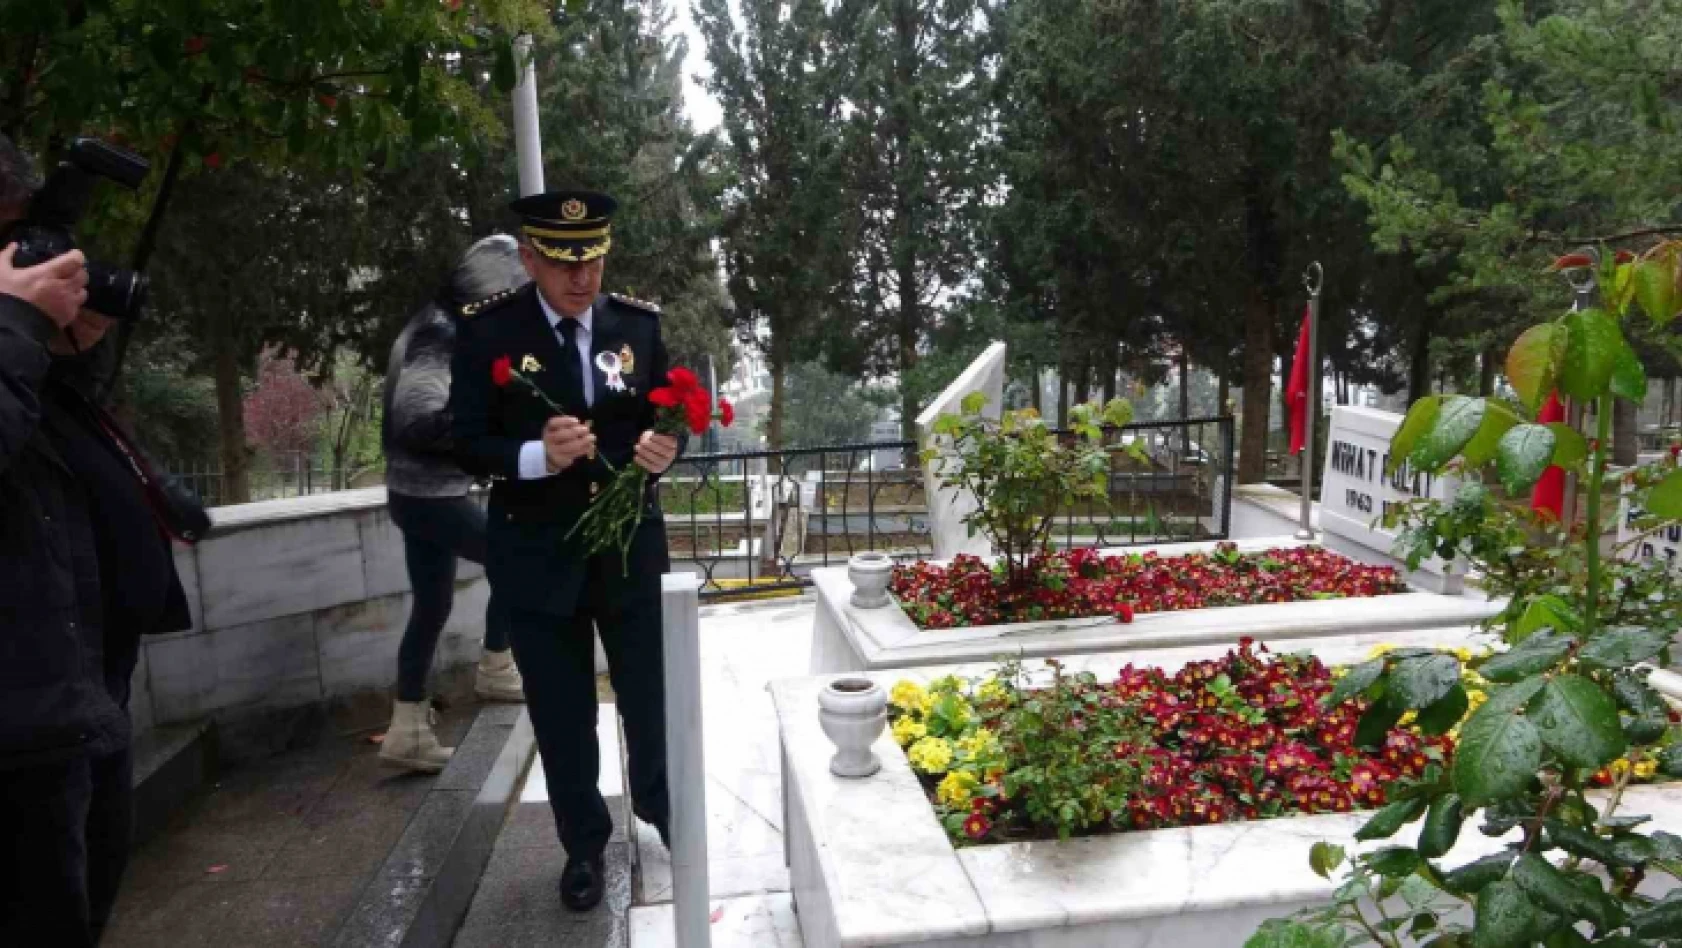 Polis haftasında şehitler de unutulmadı, emniyet müdürü tek tek mezarlarına karanfil bıraktı